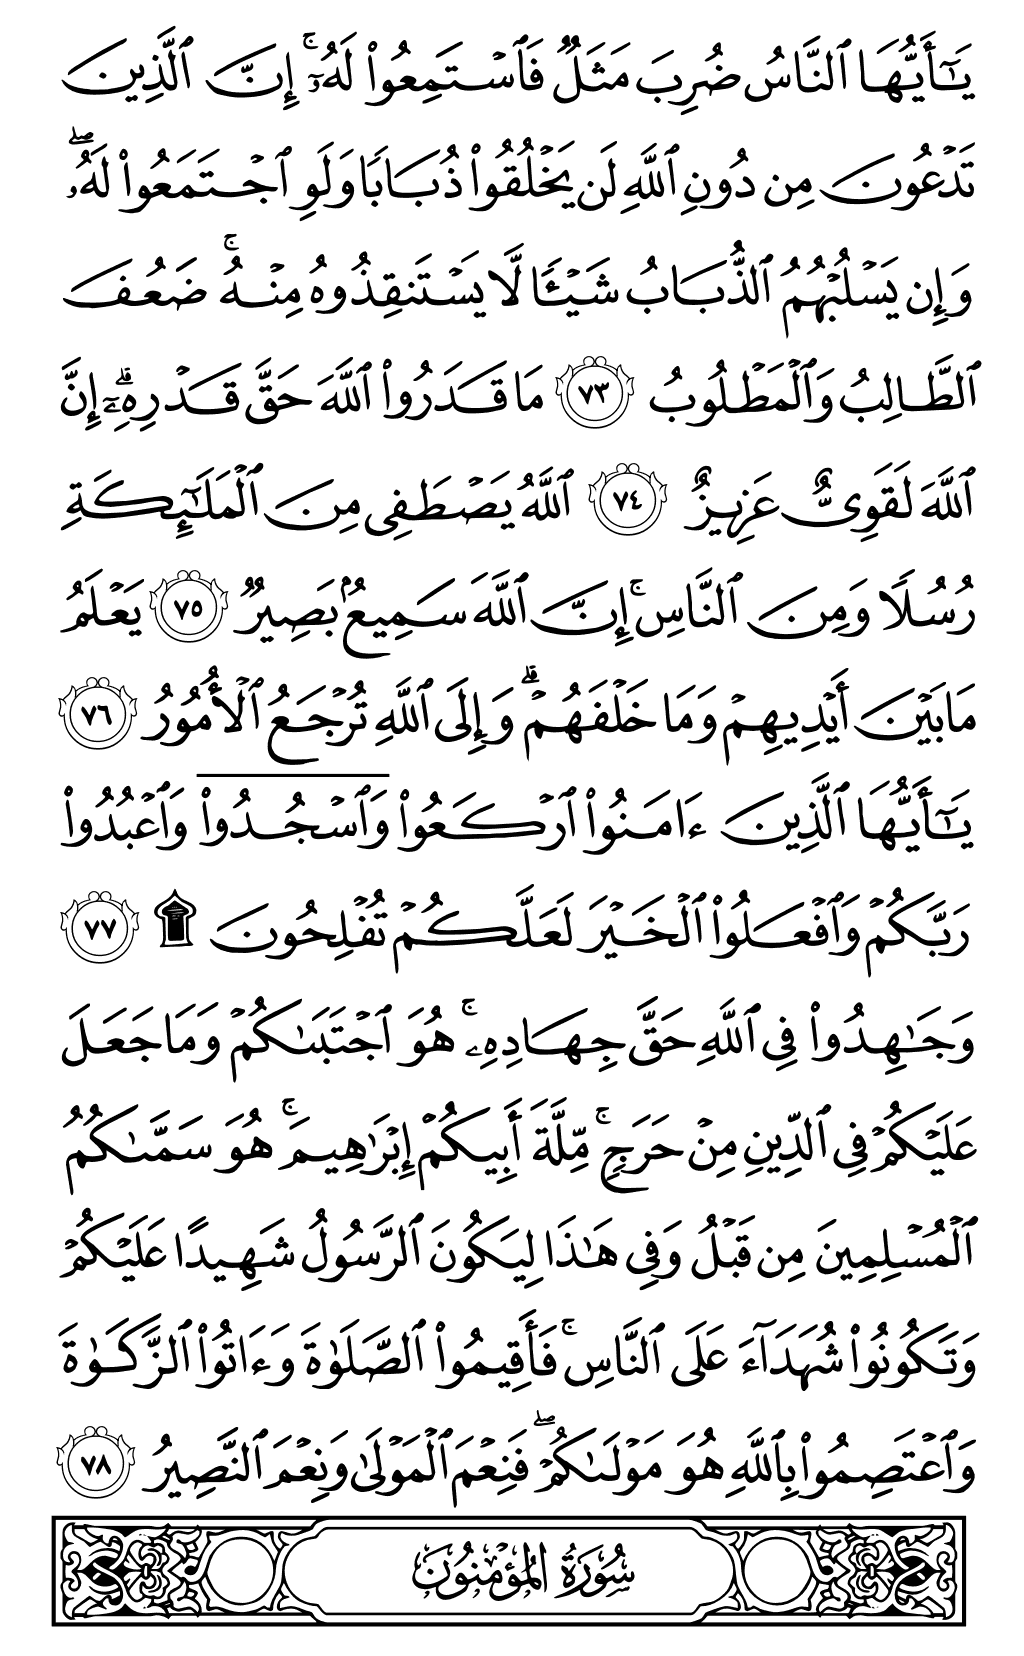 الصفحة رقم 341 من القرآن الكريم